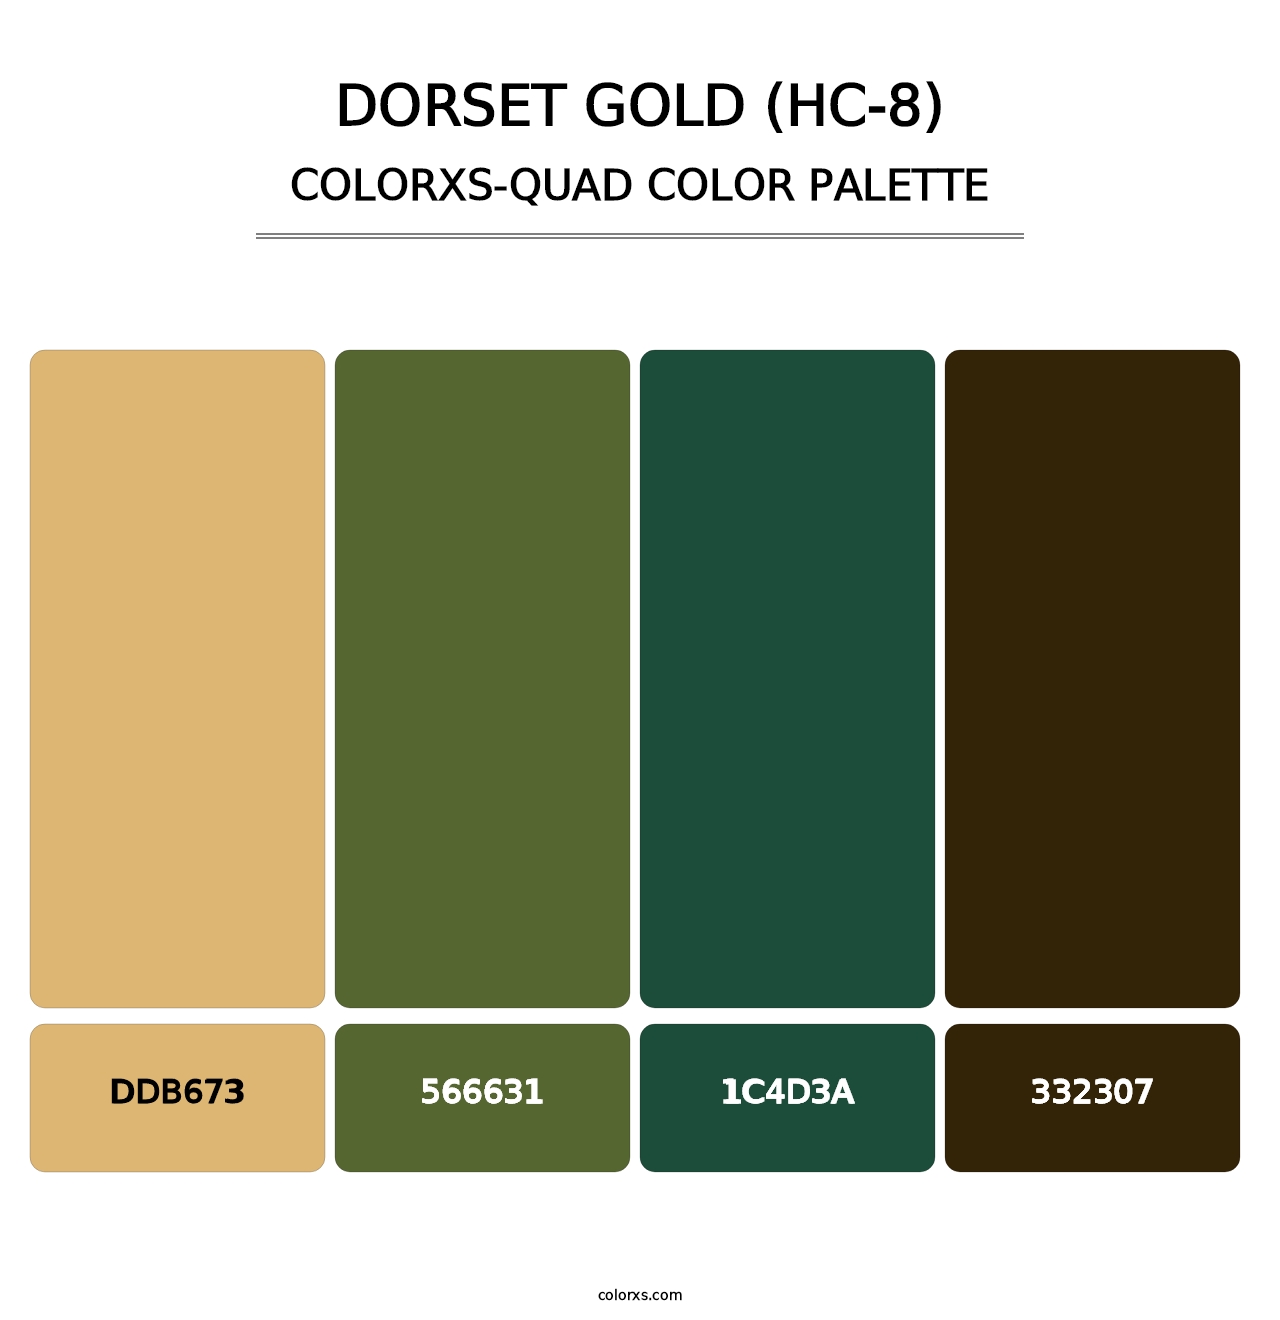 Dorset Gold (HC-8) - Colorxs Quad Palette